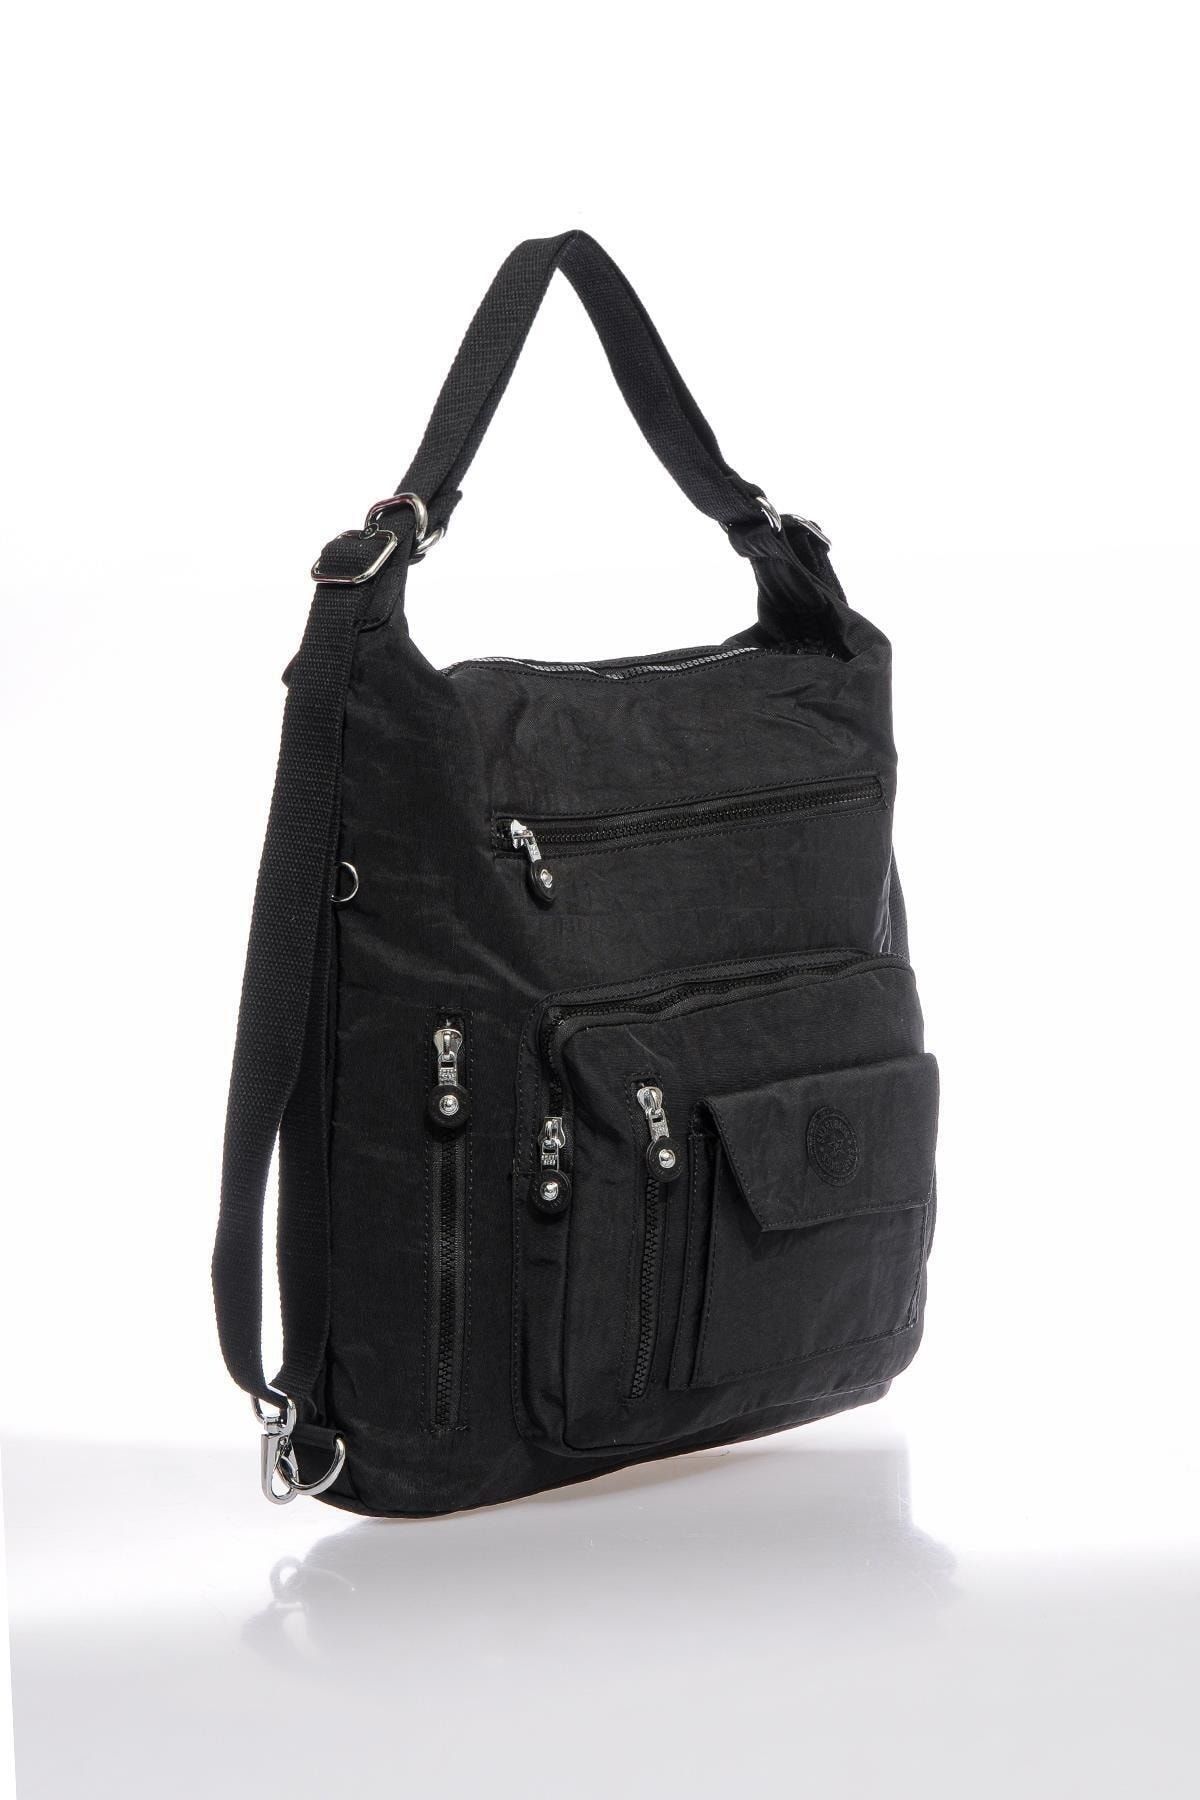 21K Smart Bags Hem Sırt Hem De Omuz Kadın Çantası Smart Bags 1205 Siyah